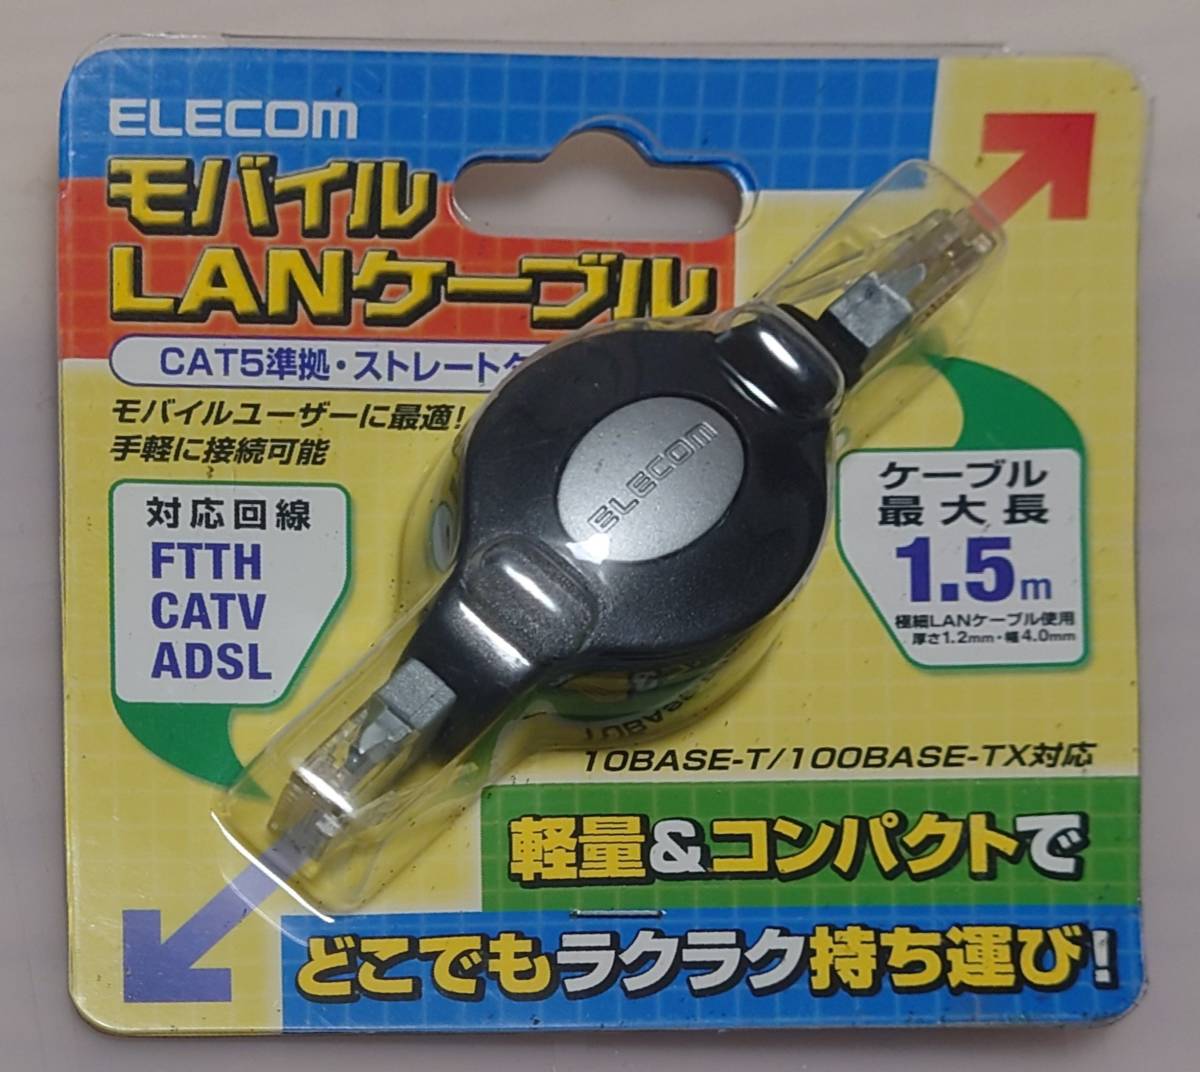 [ новый товар / не использовался / нераспечатанный ] Elecom ELECOM мобильный LAN кабель LD-MCTU/BU шт брать тип 1.5m ①